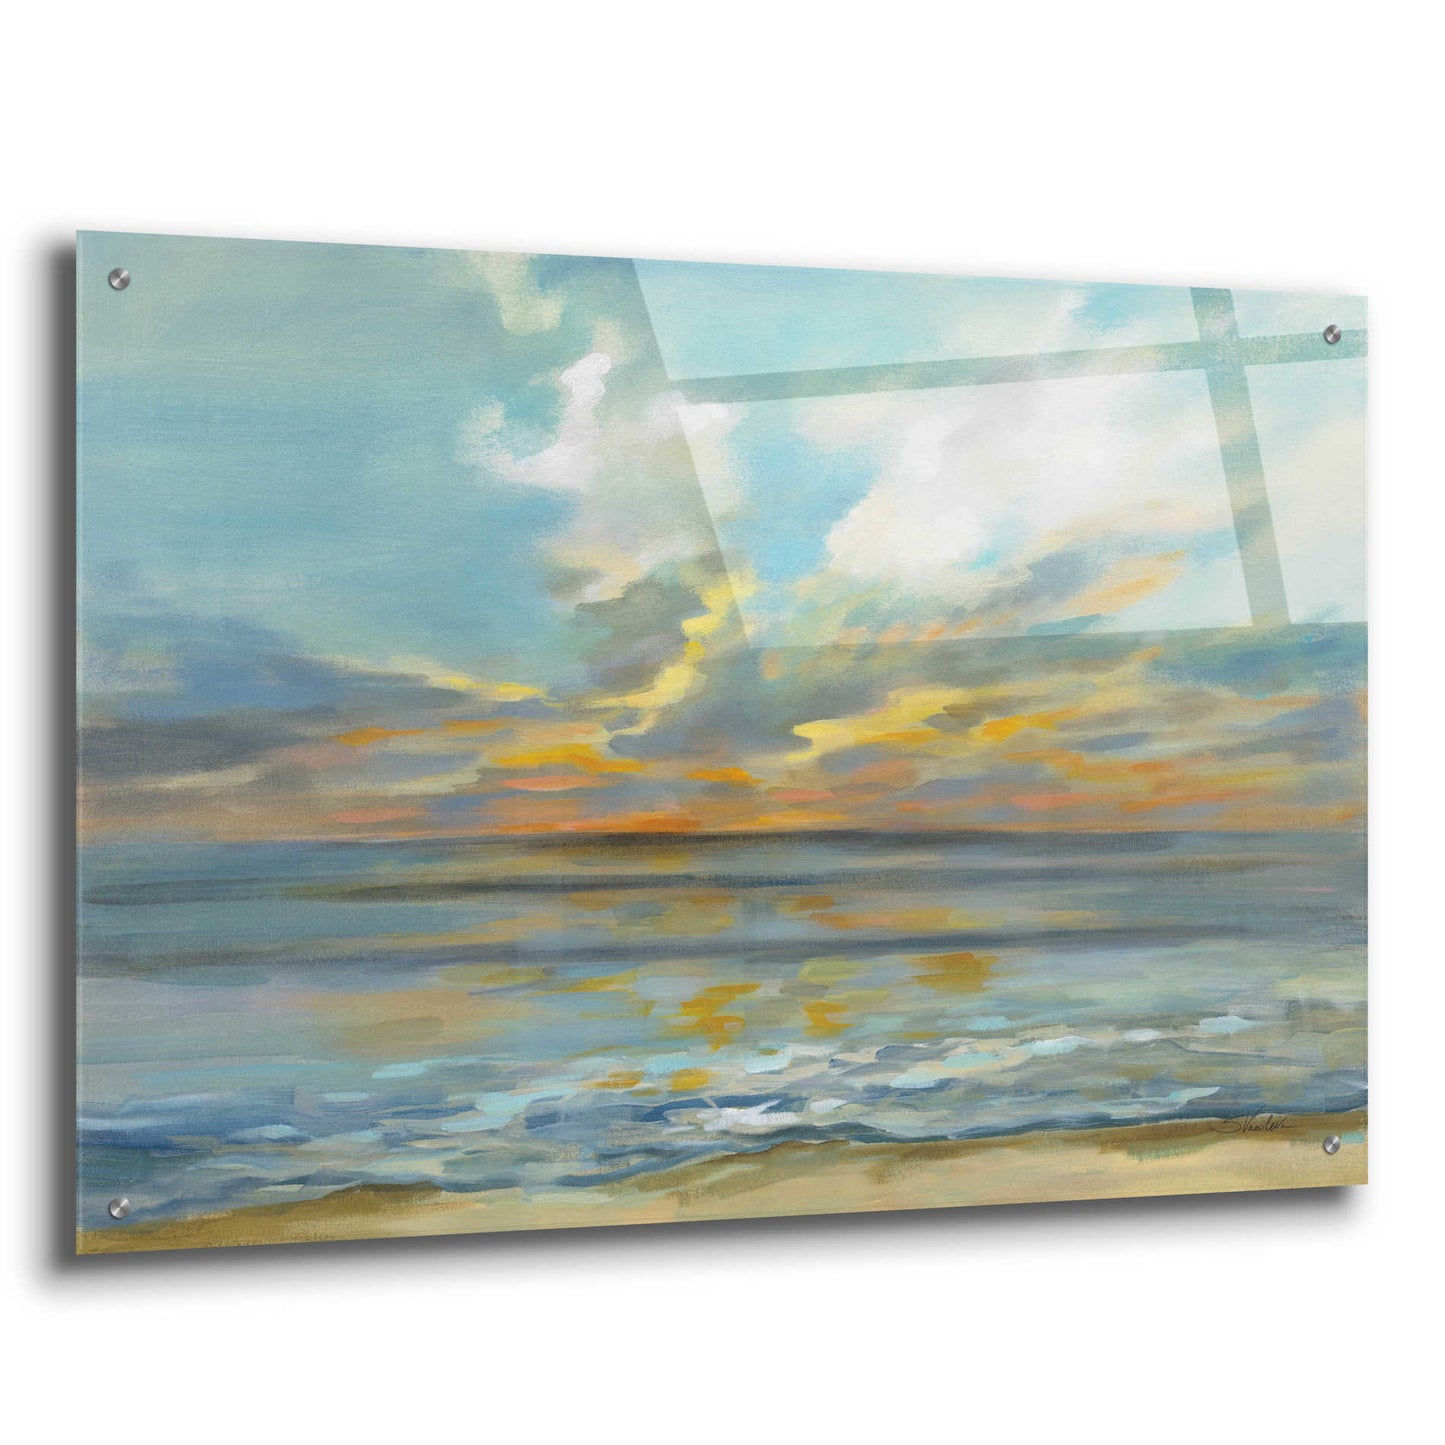 Epic Art 'Rhythmic Sunset Waves' by Silvia Vassileva, Acrylic Glass Wall Art,36x24